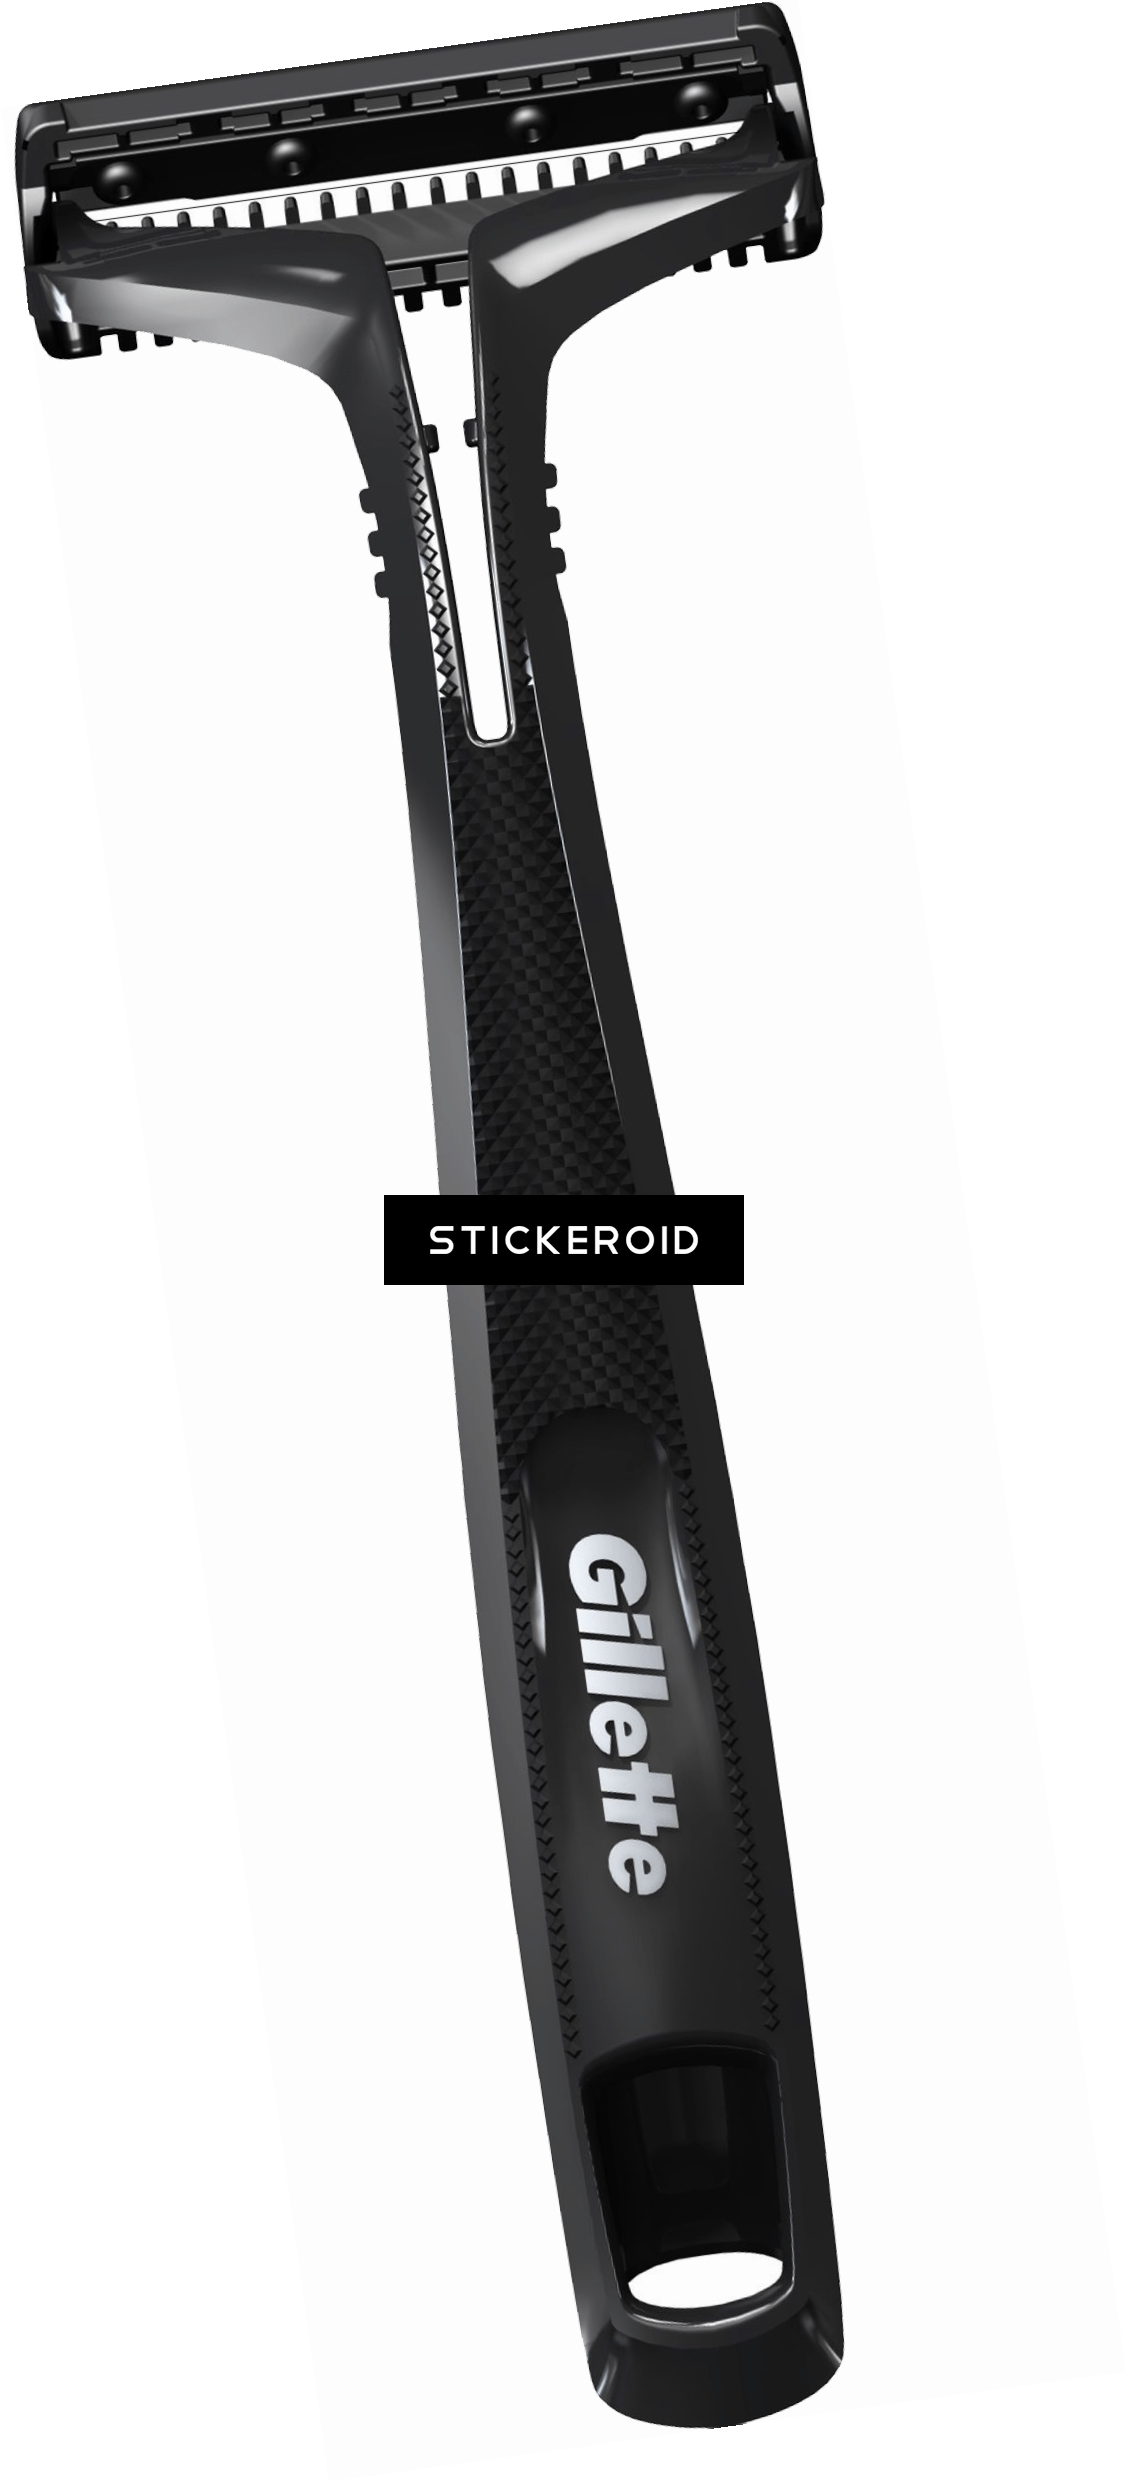 Gillette rasiert Produkt transparente Bilder